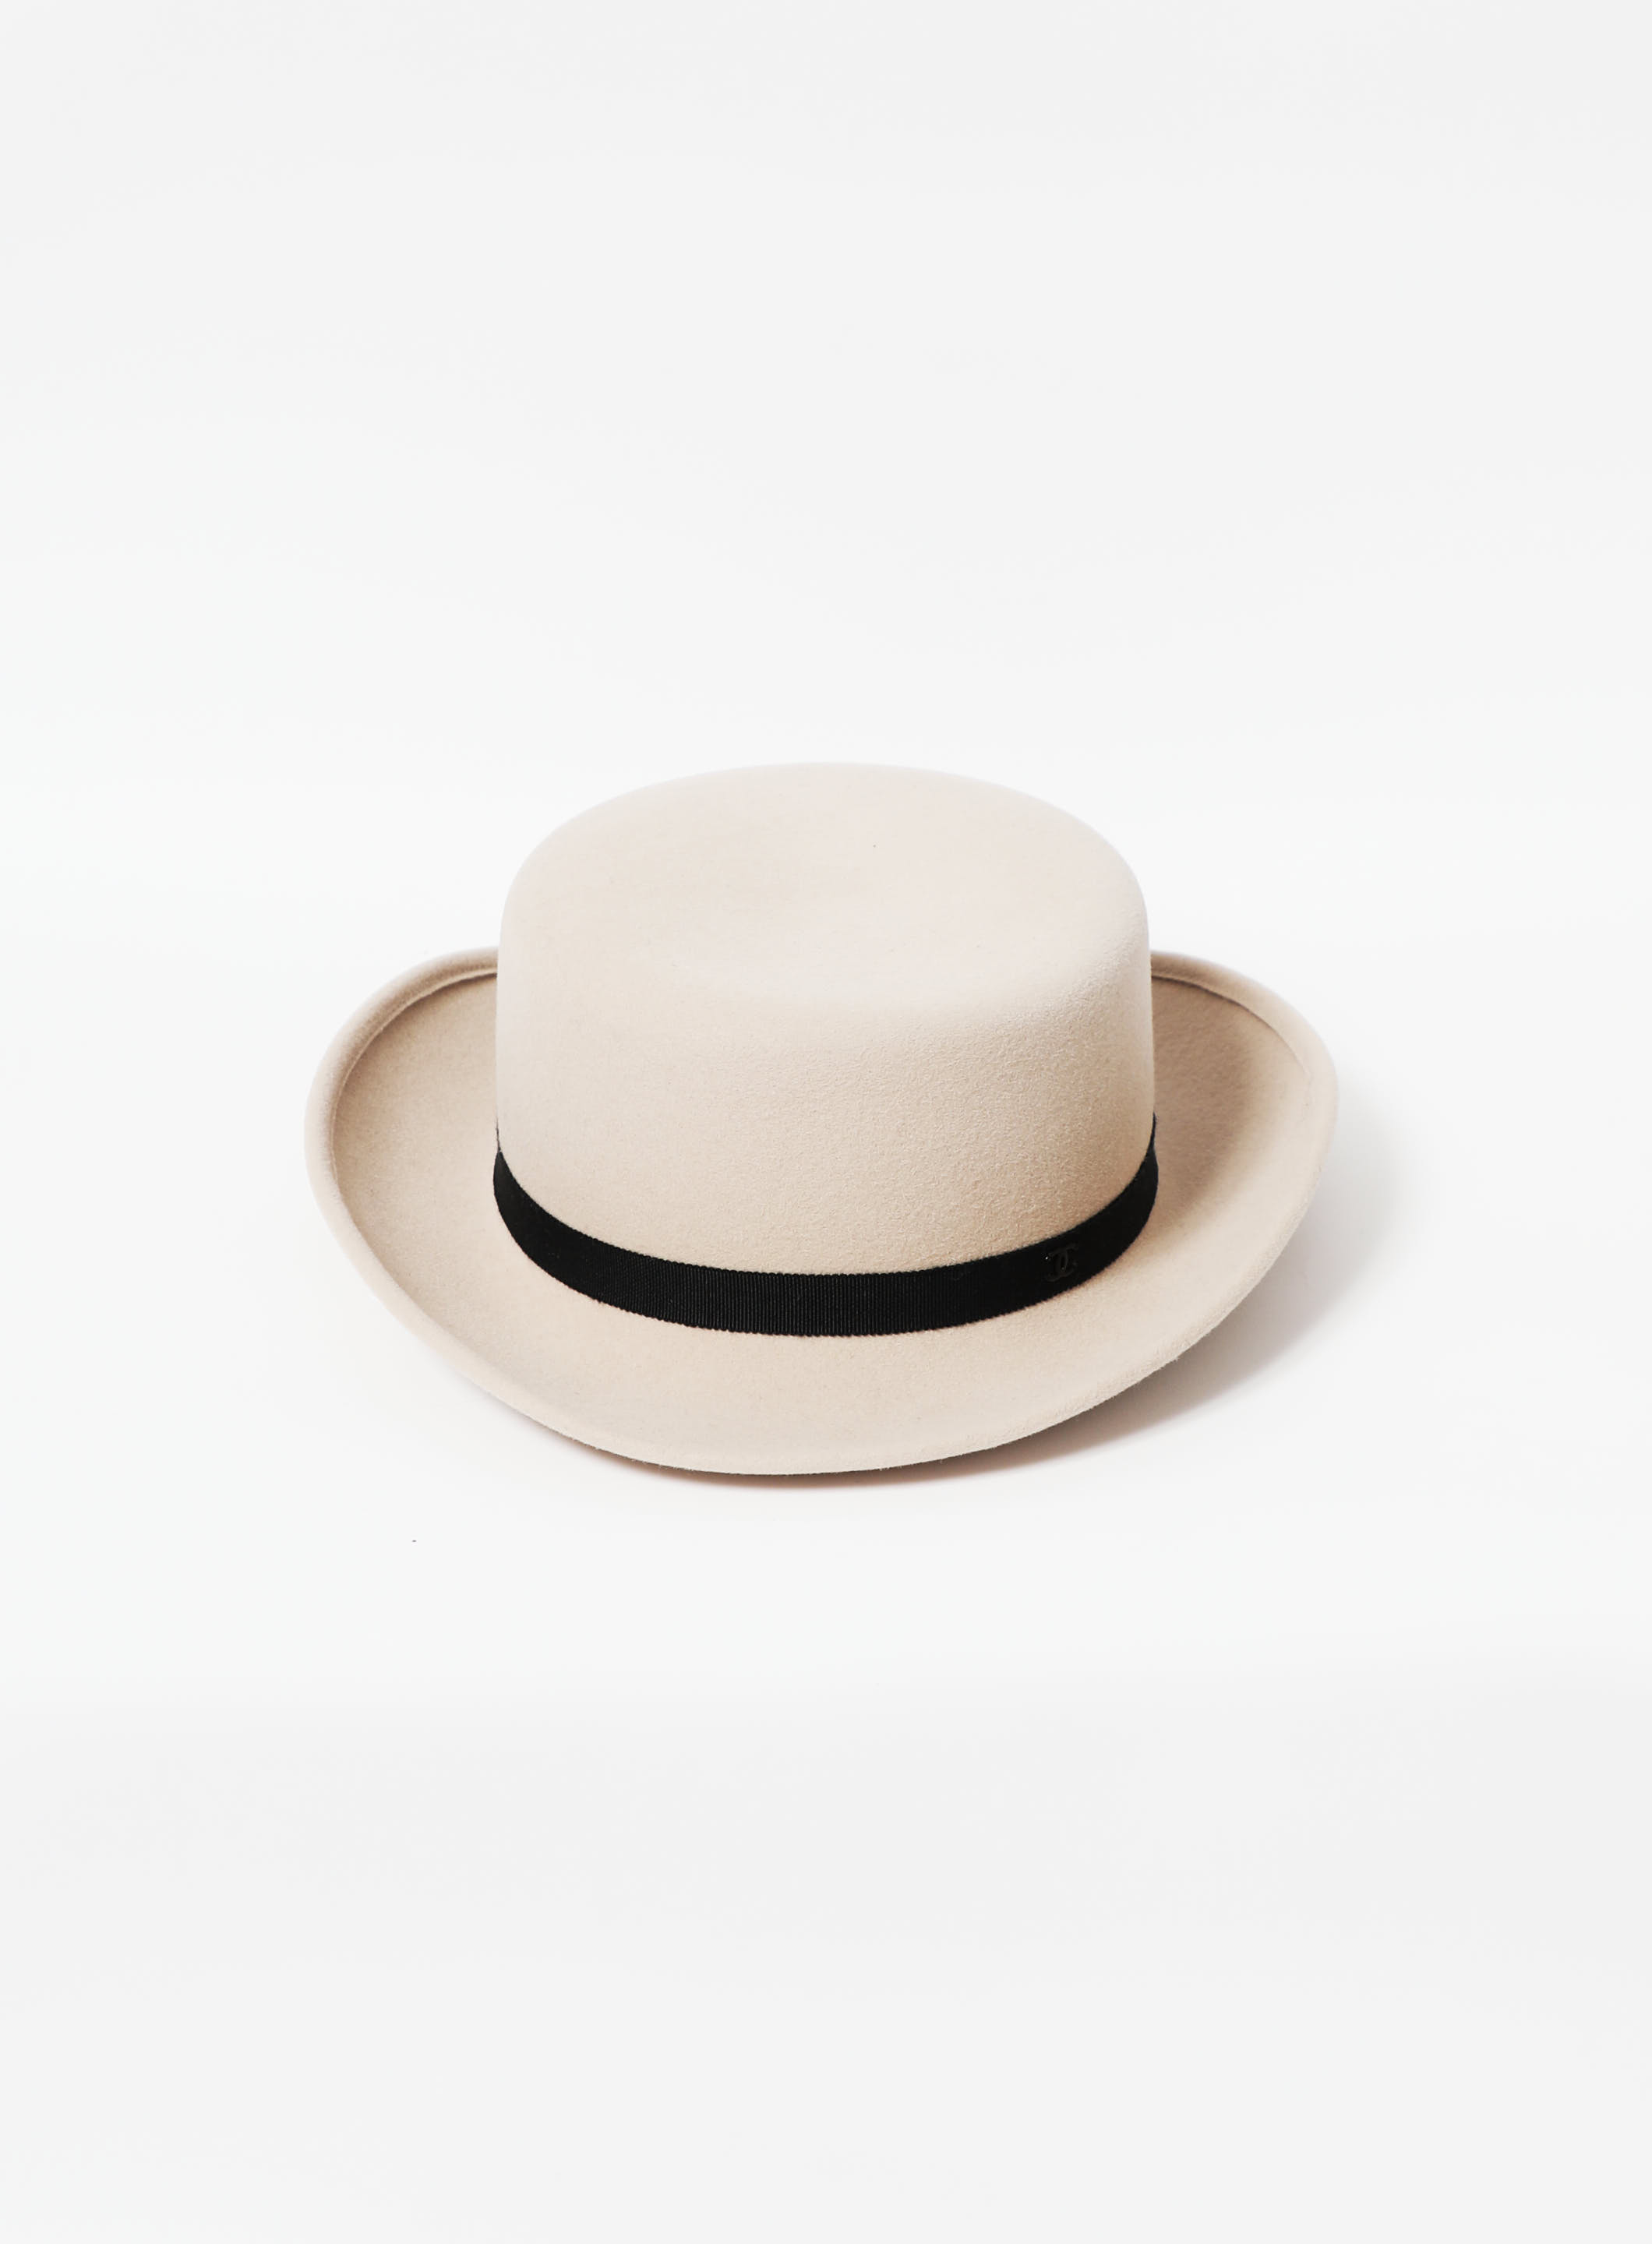 CELINE/ribbon straw hat/Phoebe Philo